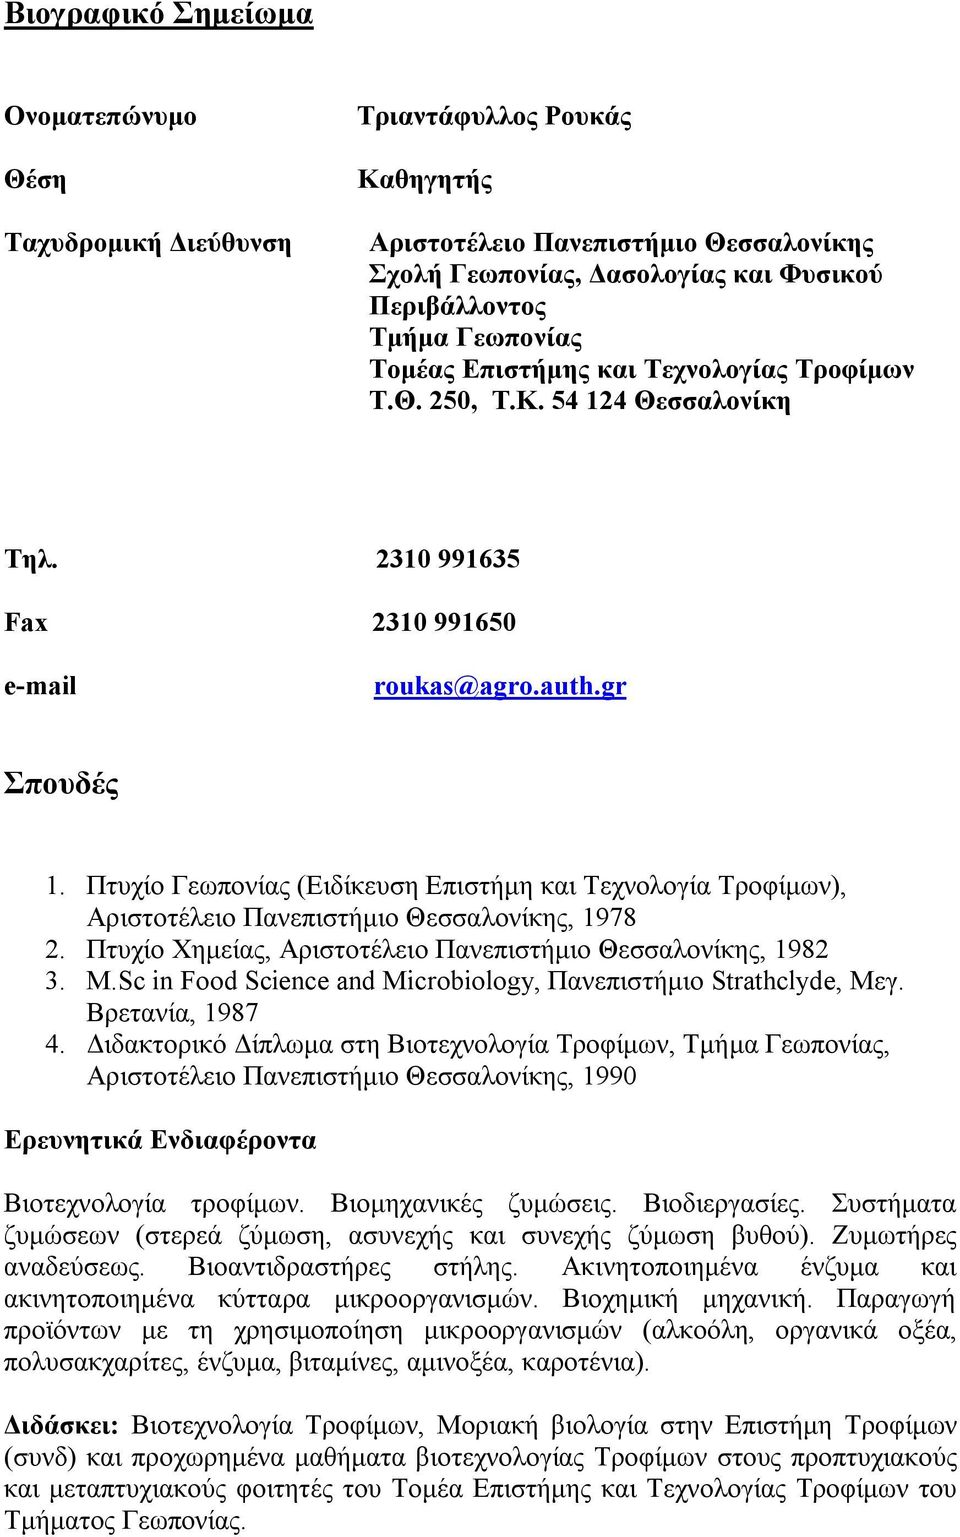 Πτυχίο Γεωπονίας (Ειδίκευση Επιστήμη και Τεχνολογία Τροφίμων), Αριστοτέλειο Πανεπιστήμιο Θεσσαλονίκης, 1978 2. Πτυχίο Χημείας, Αριστοτέλειο Πανεπιστήμιο Θεσσαλονίκης, 1982 3. M.